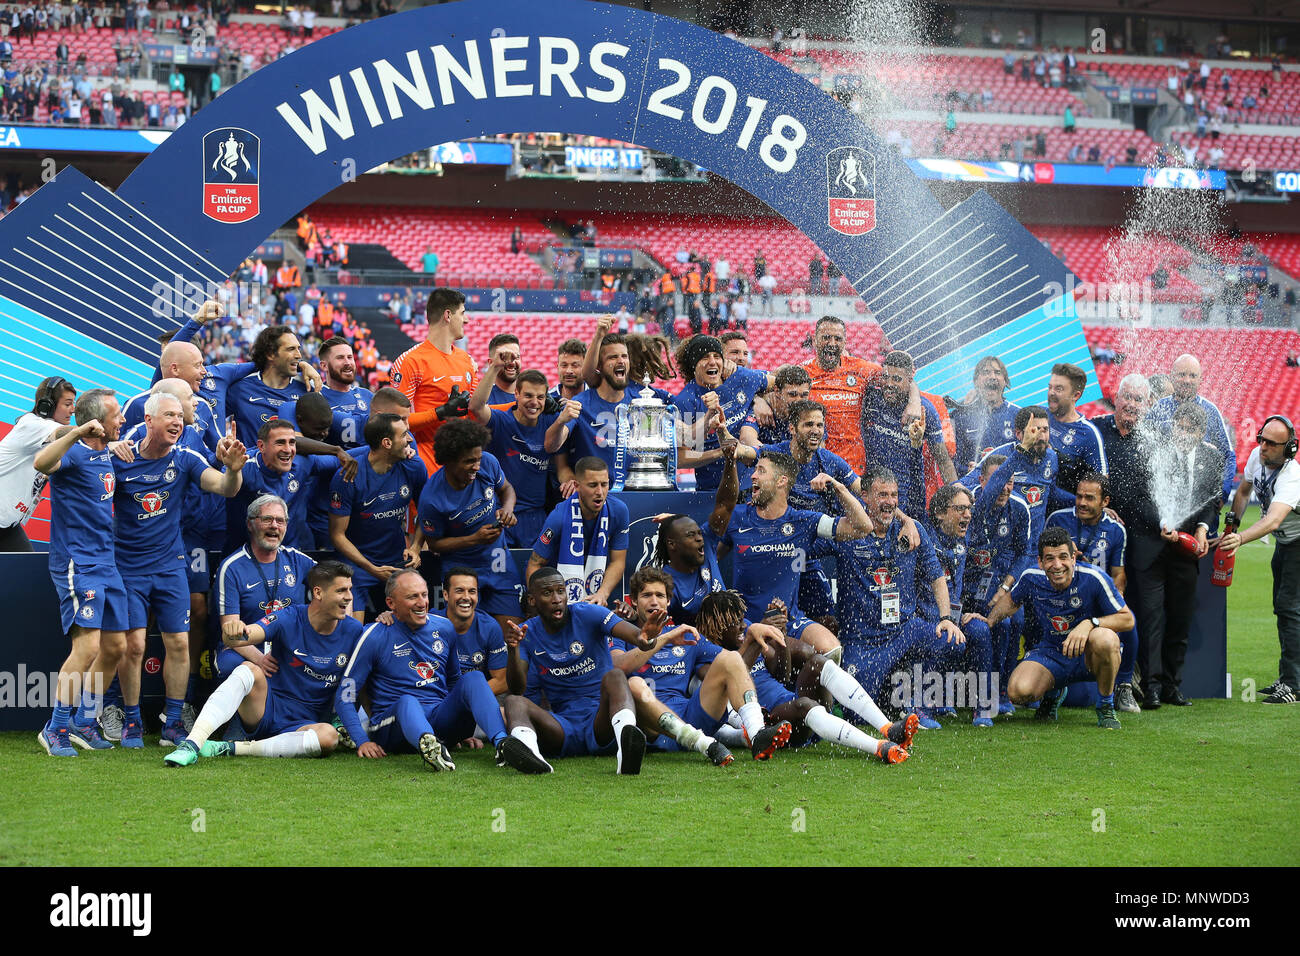 Les joueurs de Chelsea célébrer la victoire à la fin de la finale de la FA Cup match entre Chelsea et Manchester United au stade de Wembley, le 19 mai 2018 à Londres, en Angleterre. (Photo prise par Paul Chesterton/phcimages.com) Banque D'Images